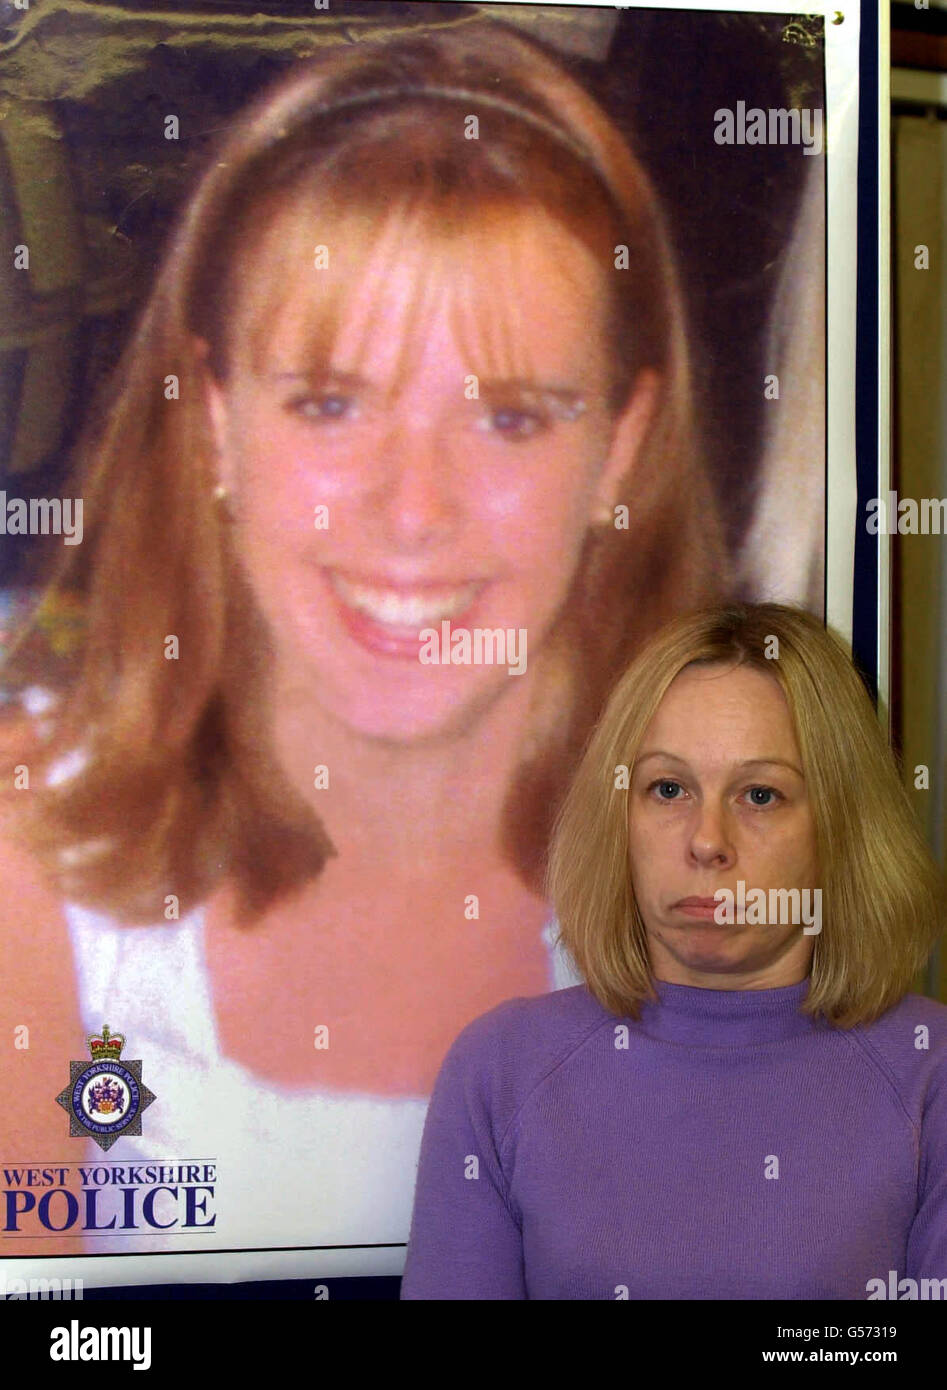 Sharon Hawkhead, 39 ans, mère de Leanne Tiernan, adolescente disparue de Leeds, devant une affiche de Leanne lors d'une conférence de presse au poste de police de Weetwood à Leeds. Mme Hawkhead a fait appel de renseignements concernant la disparition de sa fille de 16 ans. * 08/07/02 l'employée de livraison de colis John Taylor, qui avait admis l'avoir kidnappée lors d'une audience précédente, a admis son meurtre au tribunal de la Couronne de Leeds. Leanne a disparu en novembre 2000 après avoir dit Au revoir à un ami et n'a pas été vu de nouveau jusqu'à ce que son corps ait été trouvé dans des bois à 16 milles en août de l'année dernière Banque D'Images